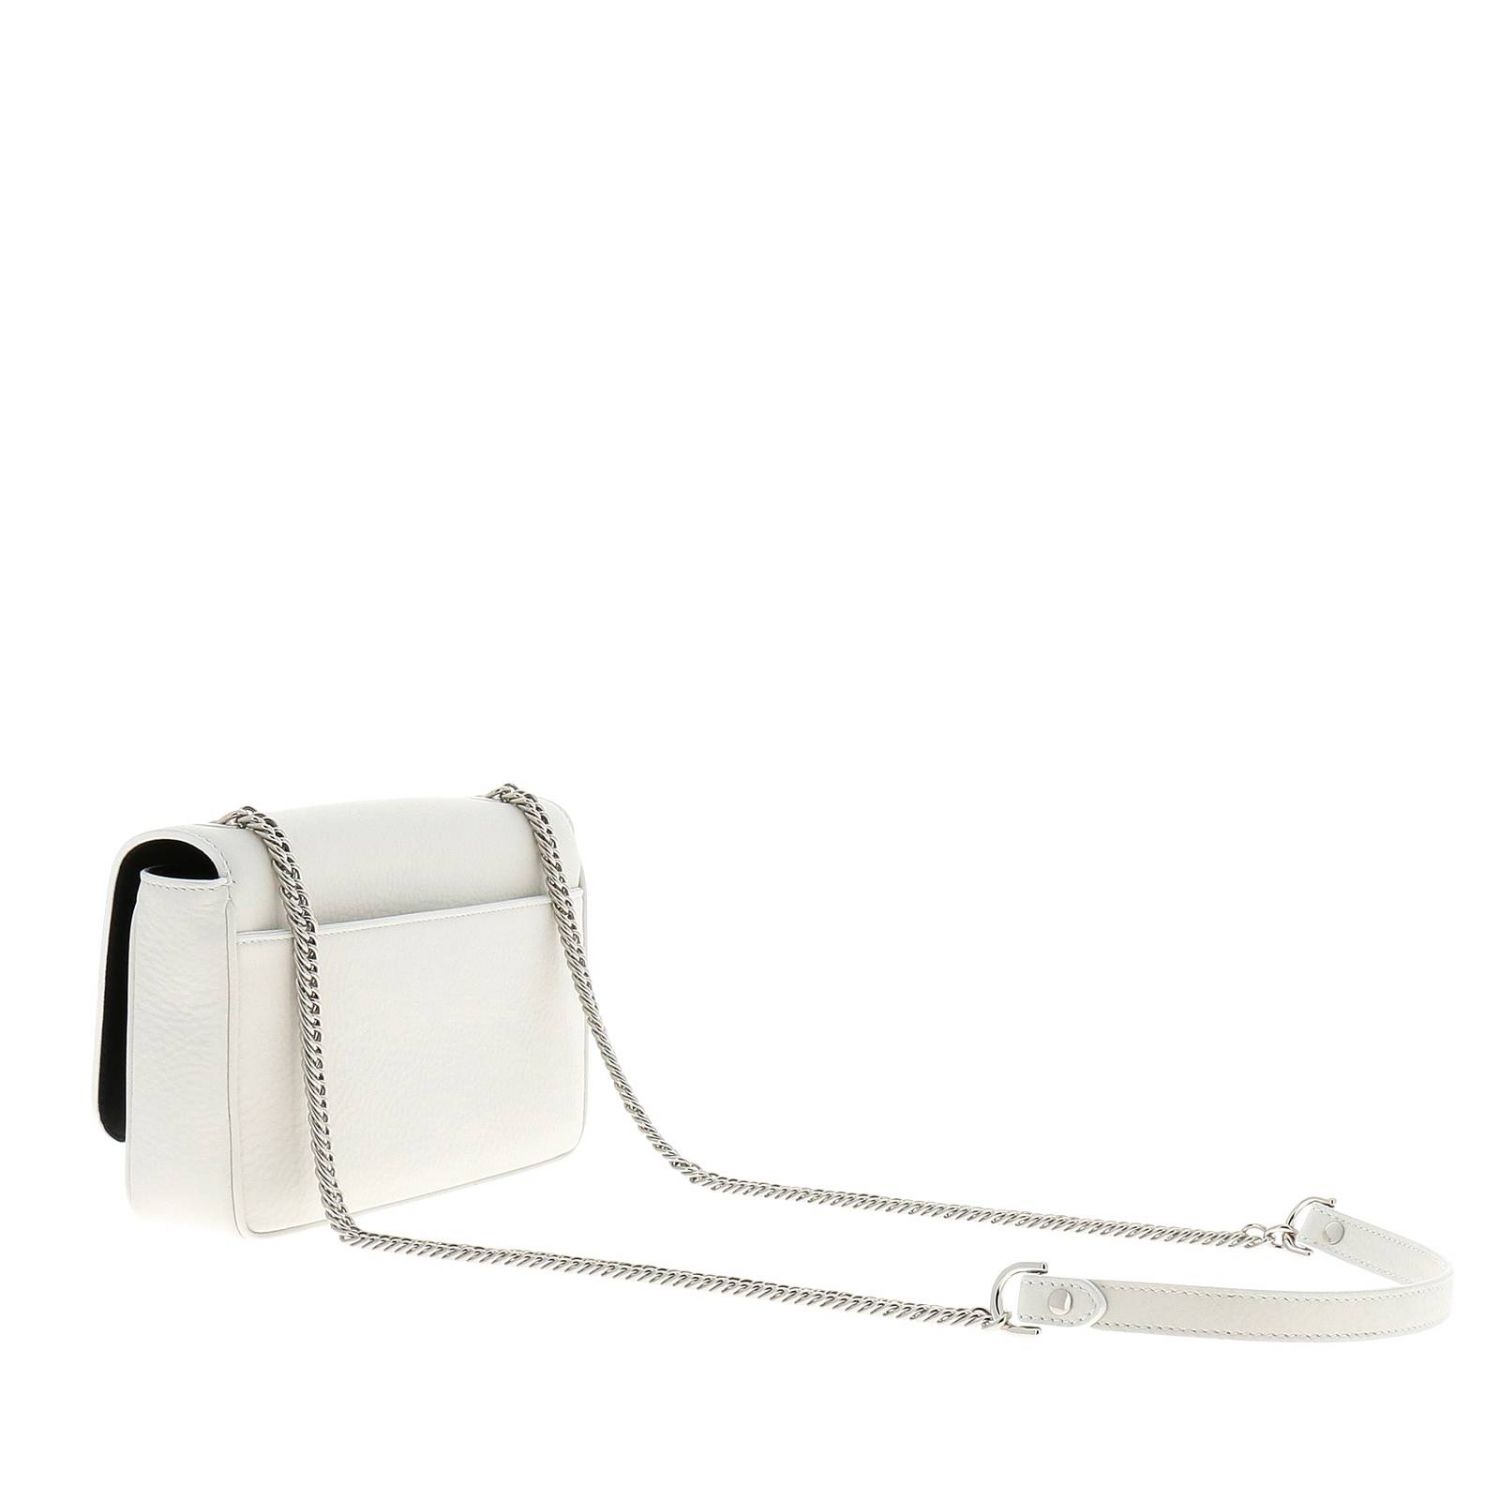 Balenciaga Outlet: Shoulder bag women - White | Crossbody Bags ...